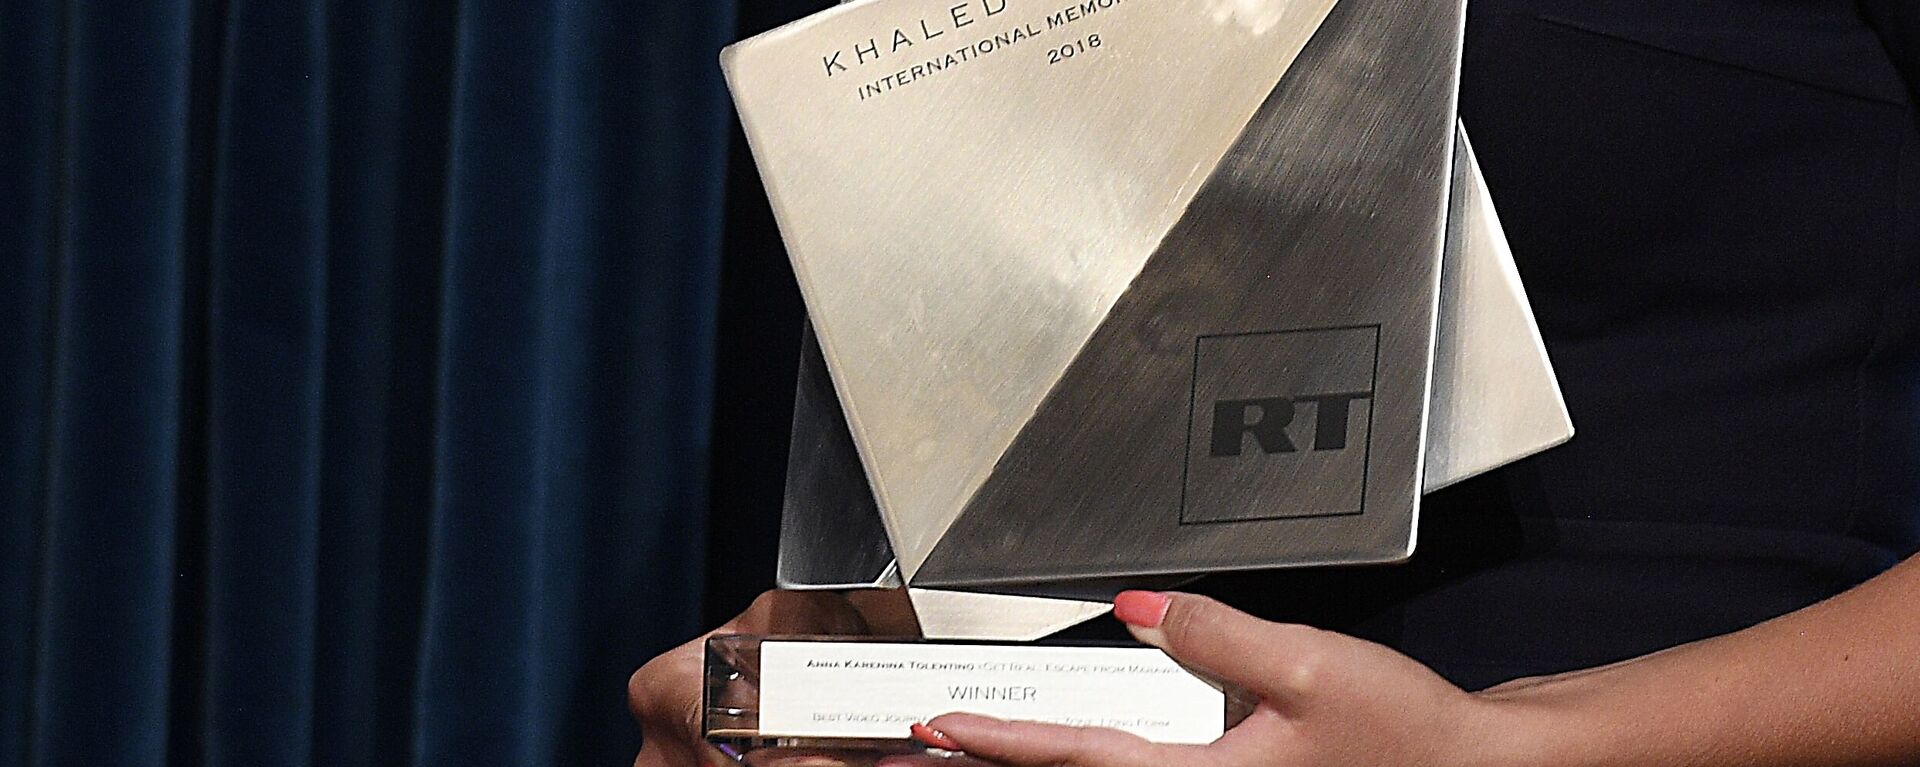 Награда международной премии The Khaled Alkhateb Memorial Awards, учрежденной телеканалом RT в память о журналисте Халеде аль-Хатыбе - Sputnik Латвия, 1920, 31.07.2020